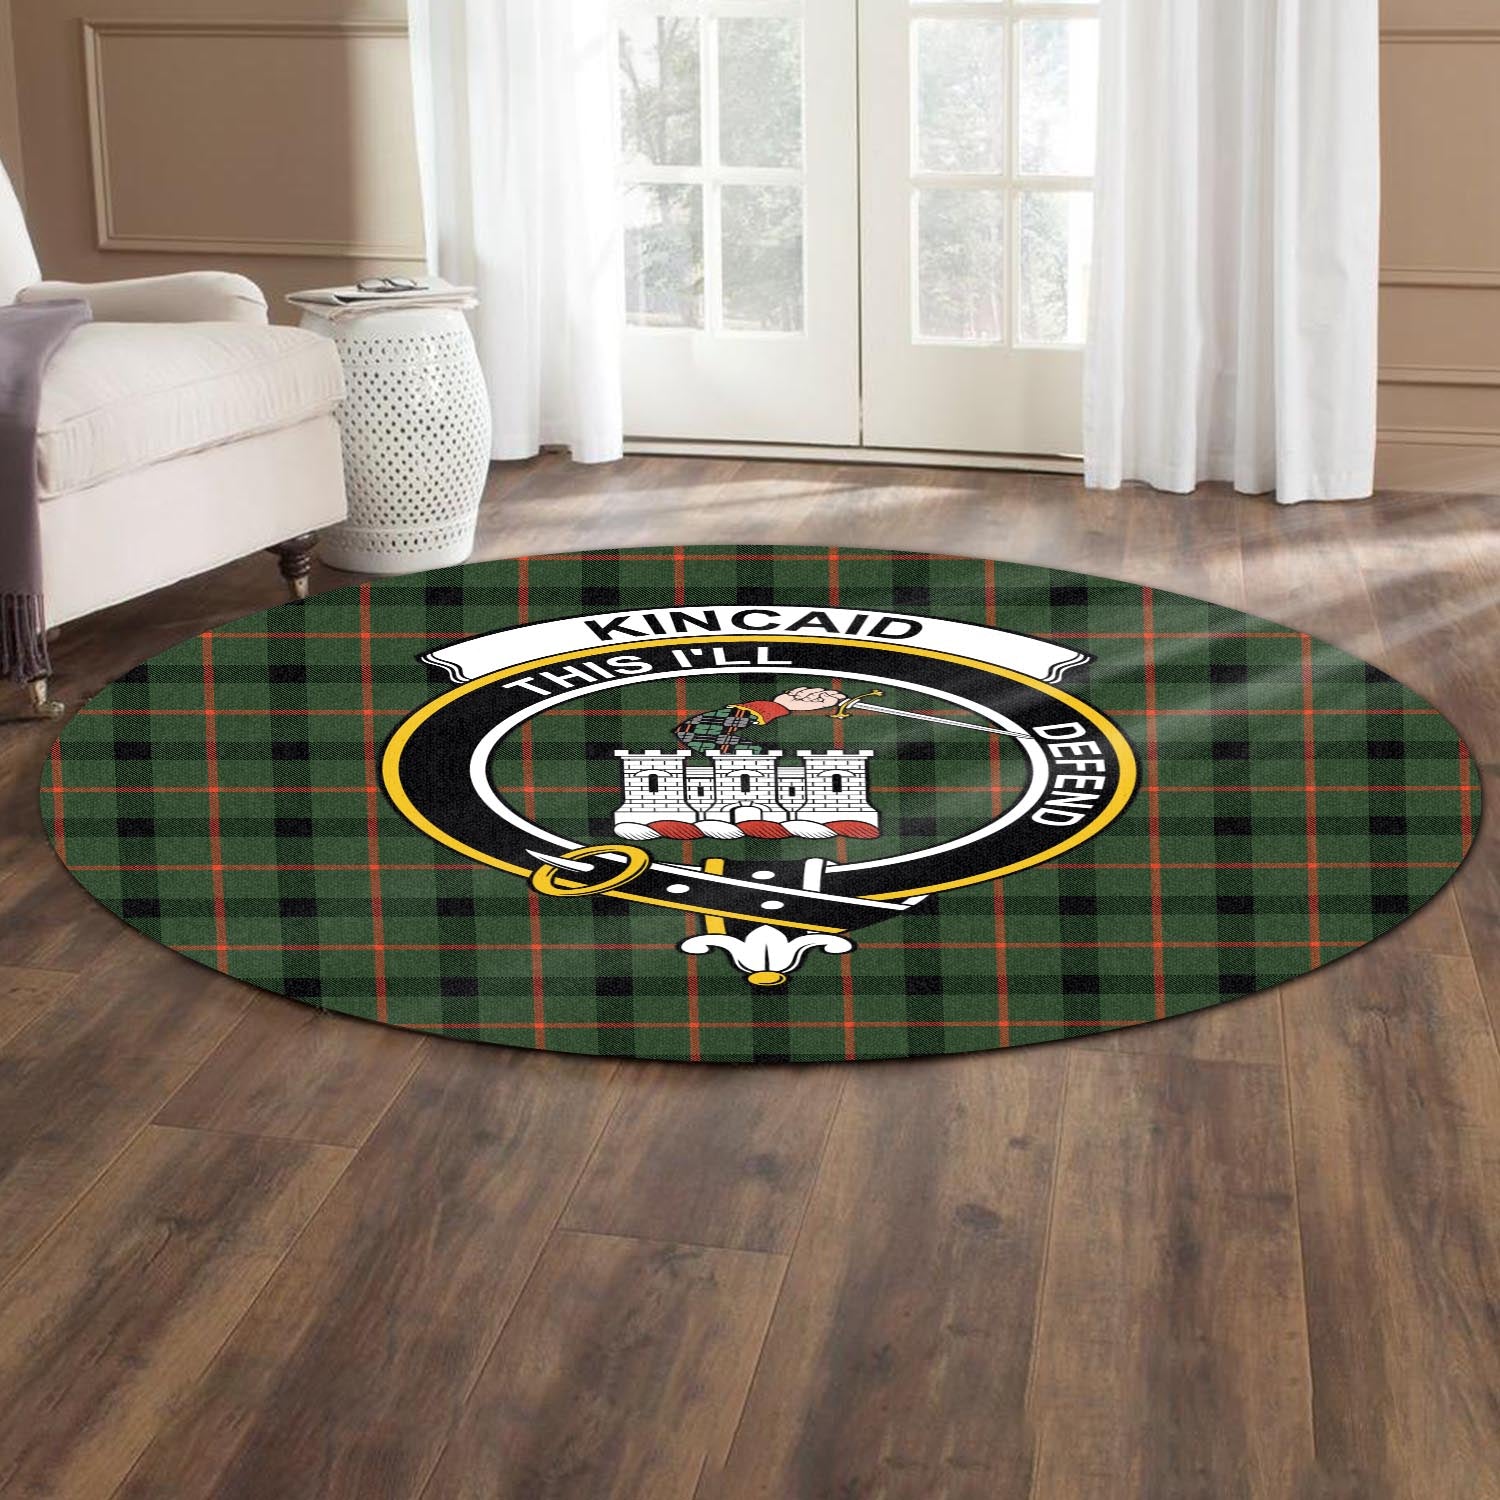 kincaid-modern-tartan-round-rug-with-family-crest